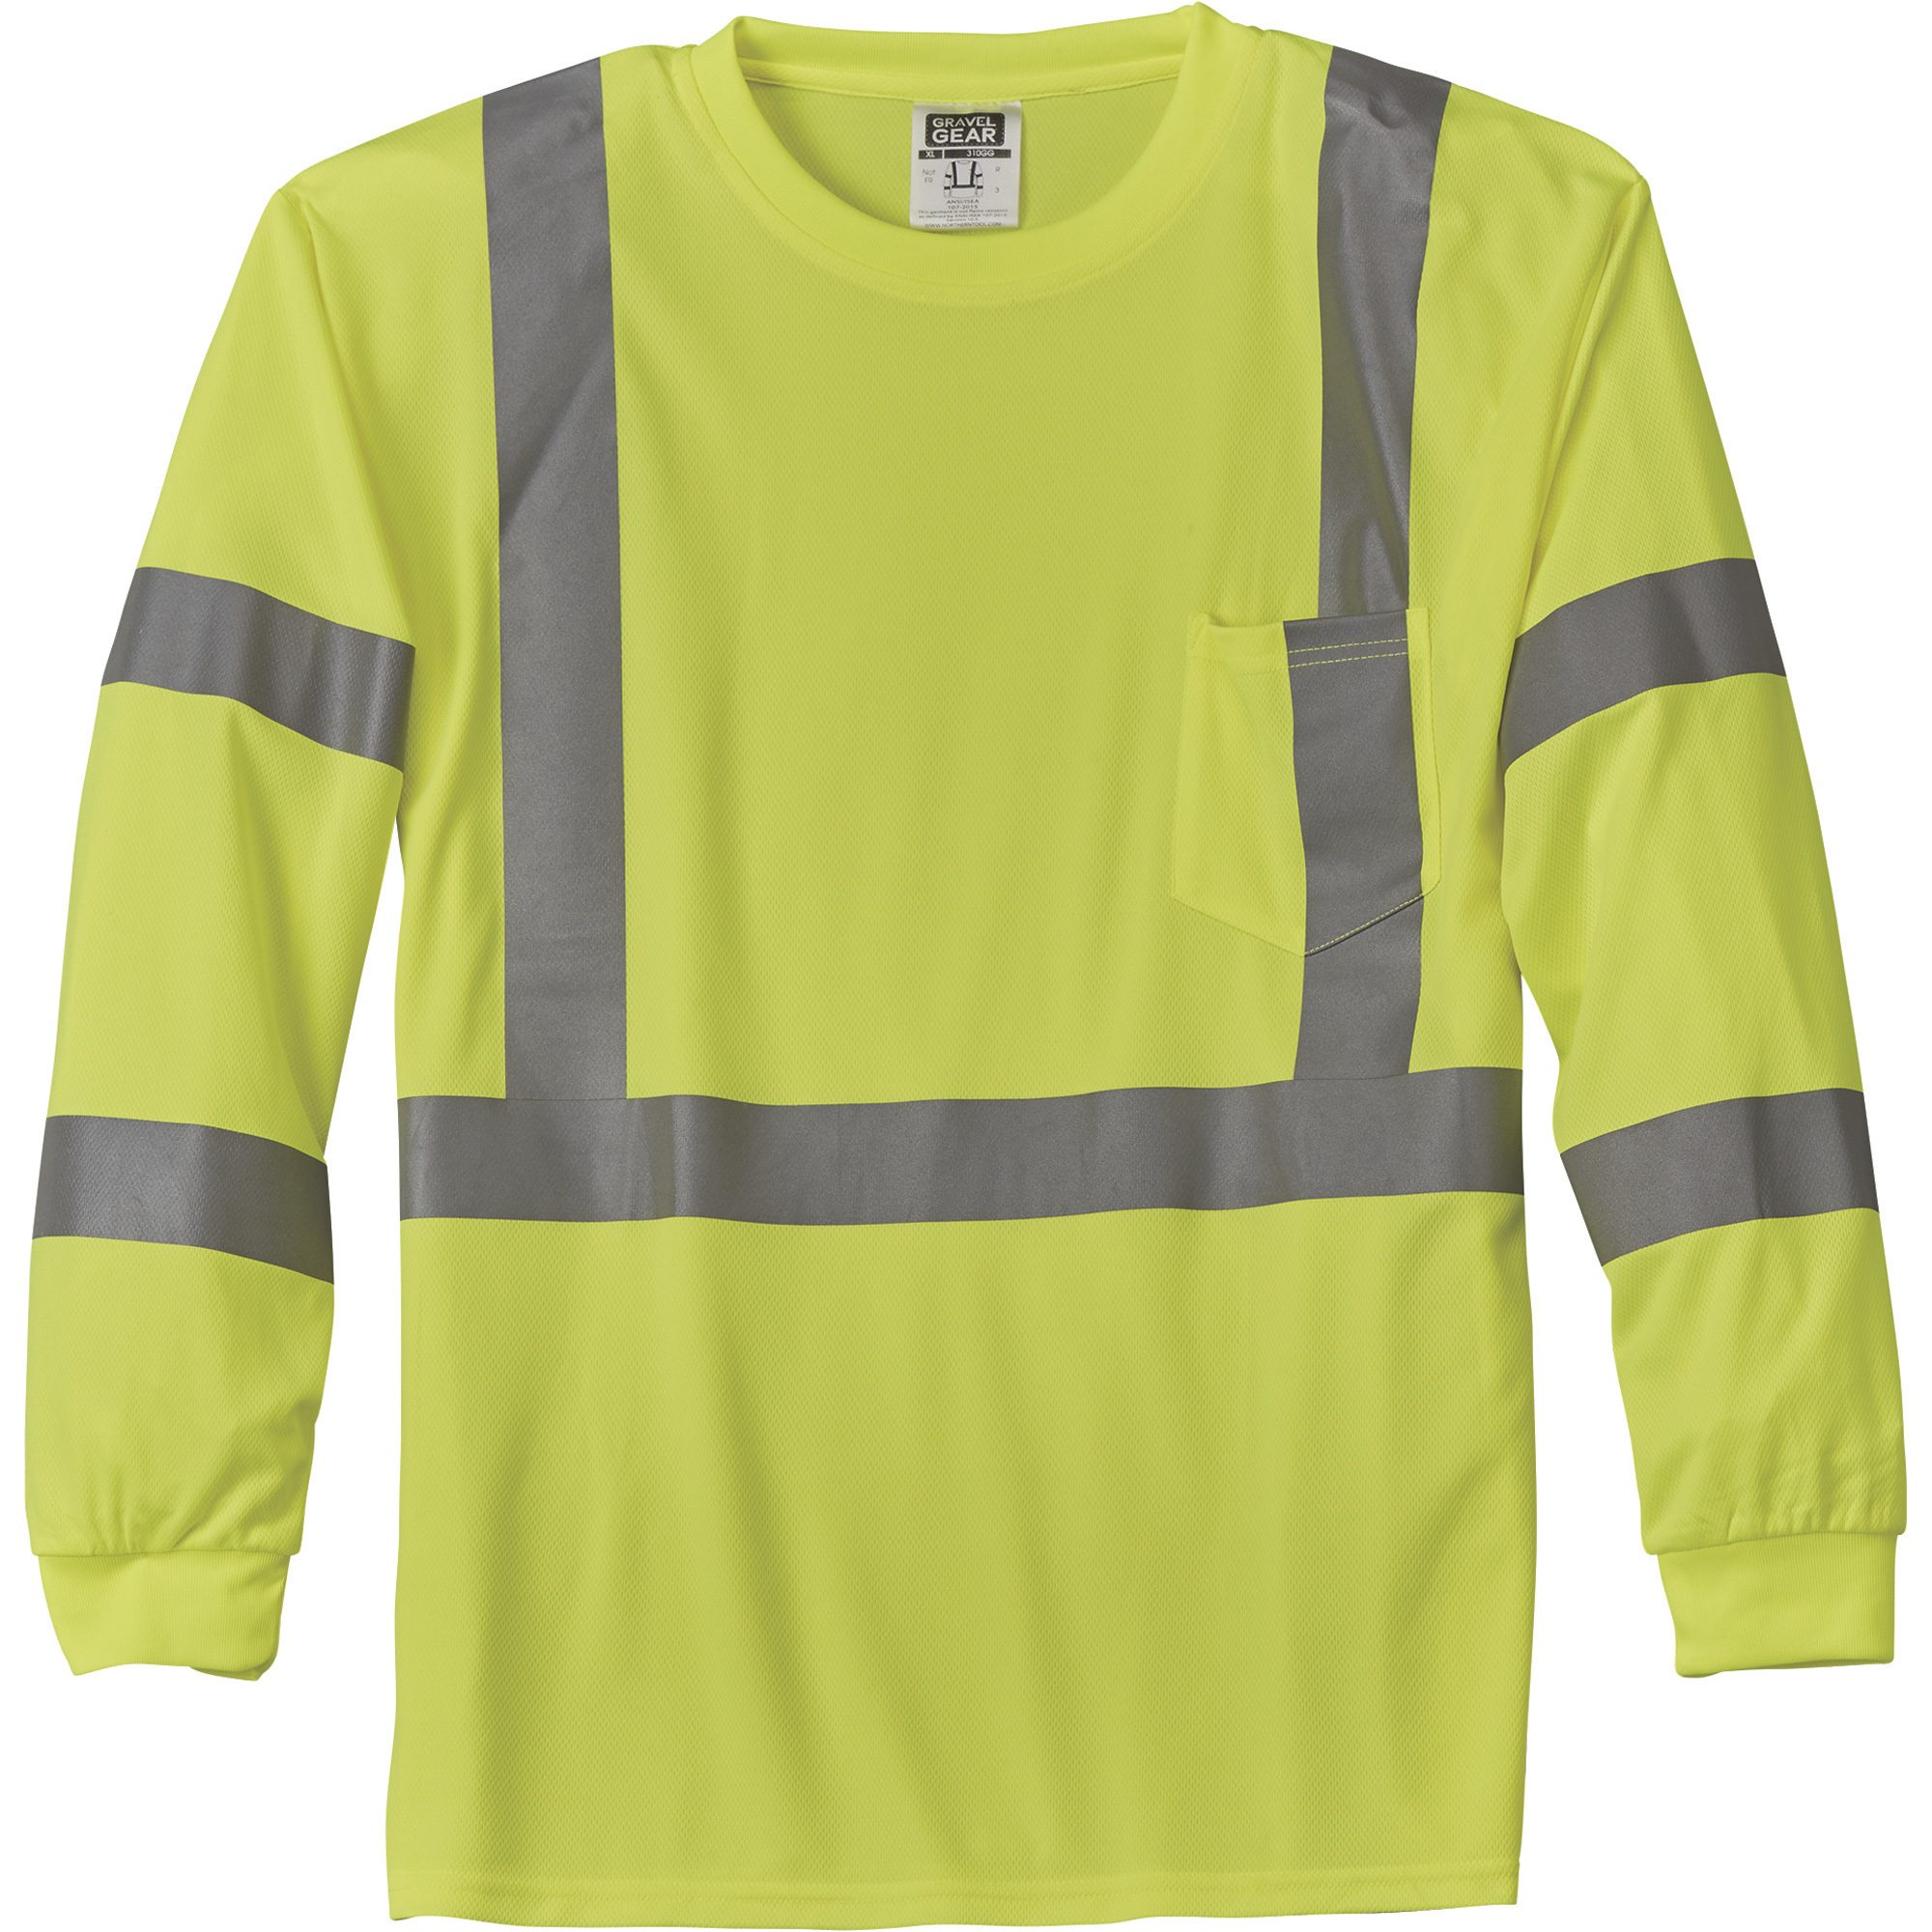 Gravel Gear HV Menâs Class 3 High Visibility High-Performance Long Sleeve T-Shirt â Lime, Medium